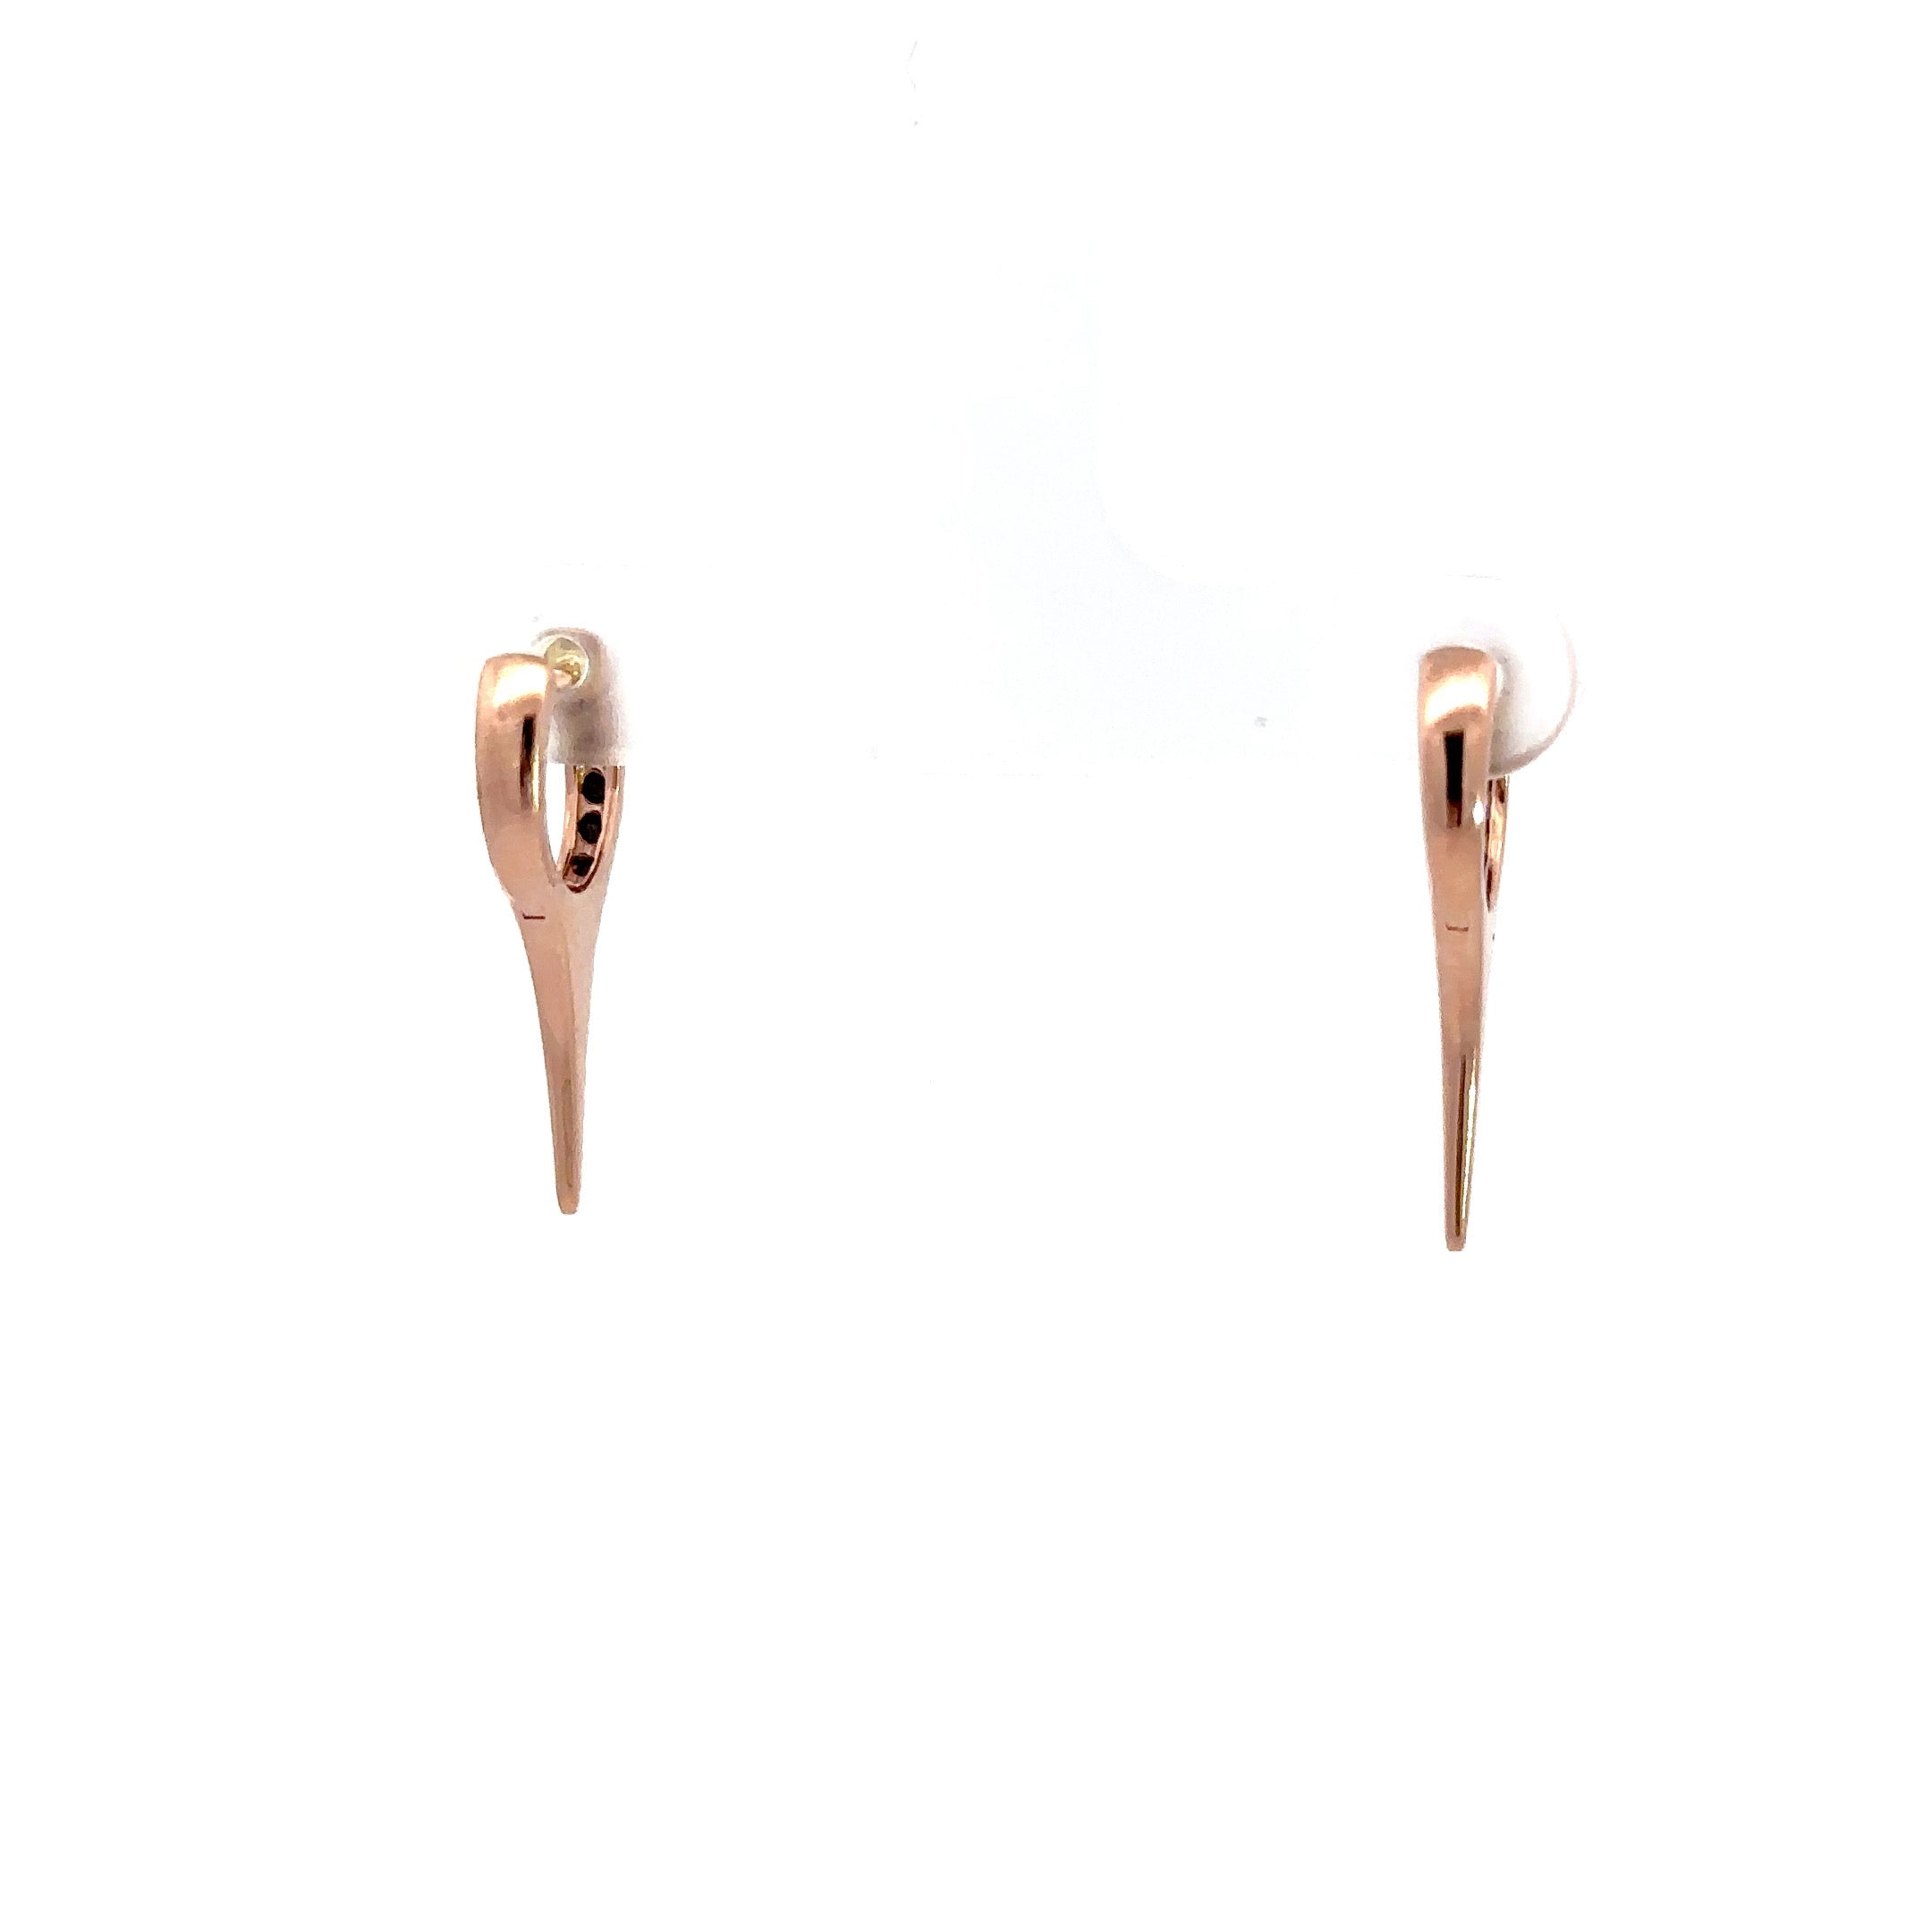 WD1195 14kt Single Row Black Diamond Needle Spike Earrings